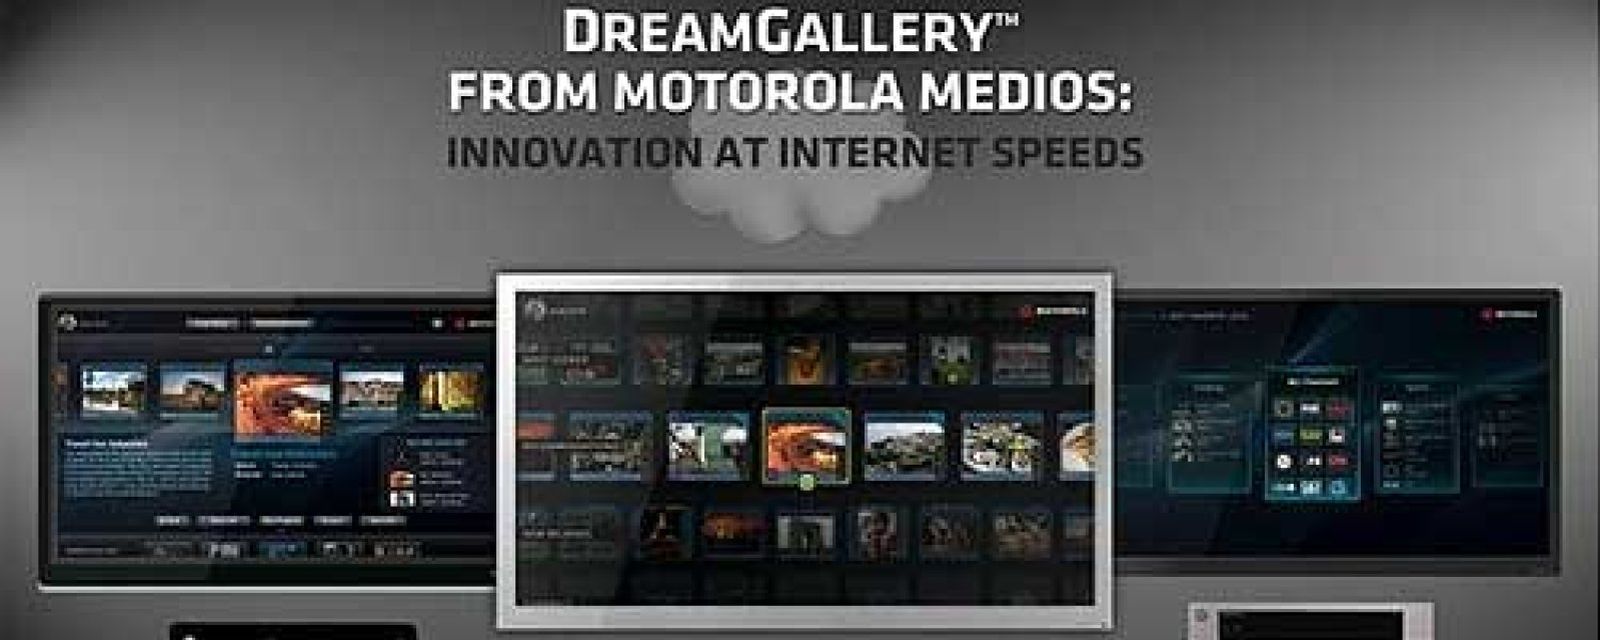 Foto: DreamGallery, la televisión de ensueño según Motorola